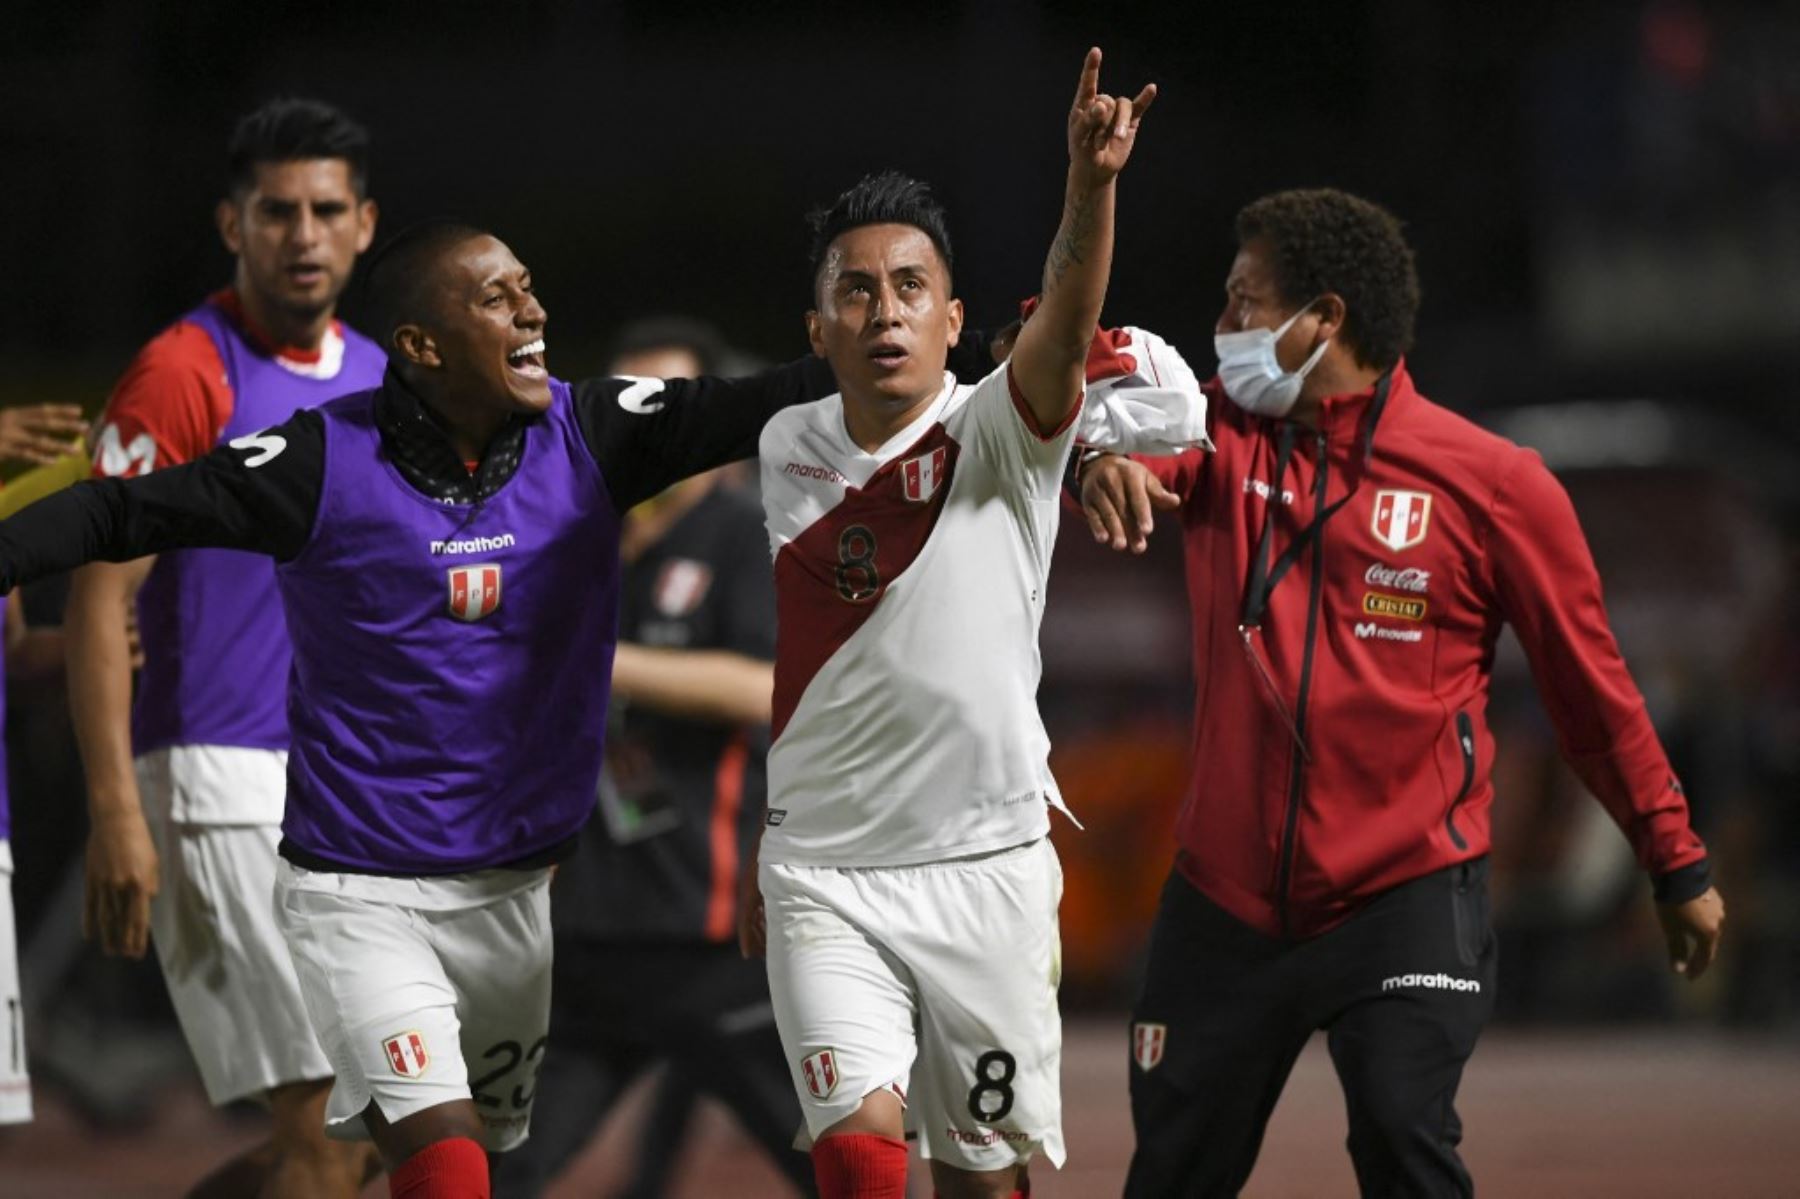 La selección peruana logró tres puntos importantes en Caracas que lo coloca en la pelea por un cupo a Catar 2022